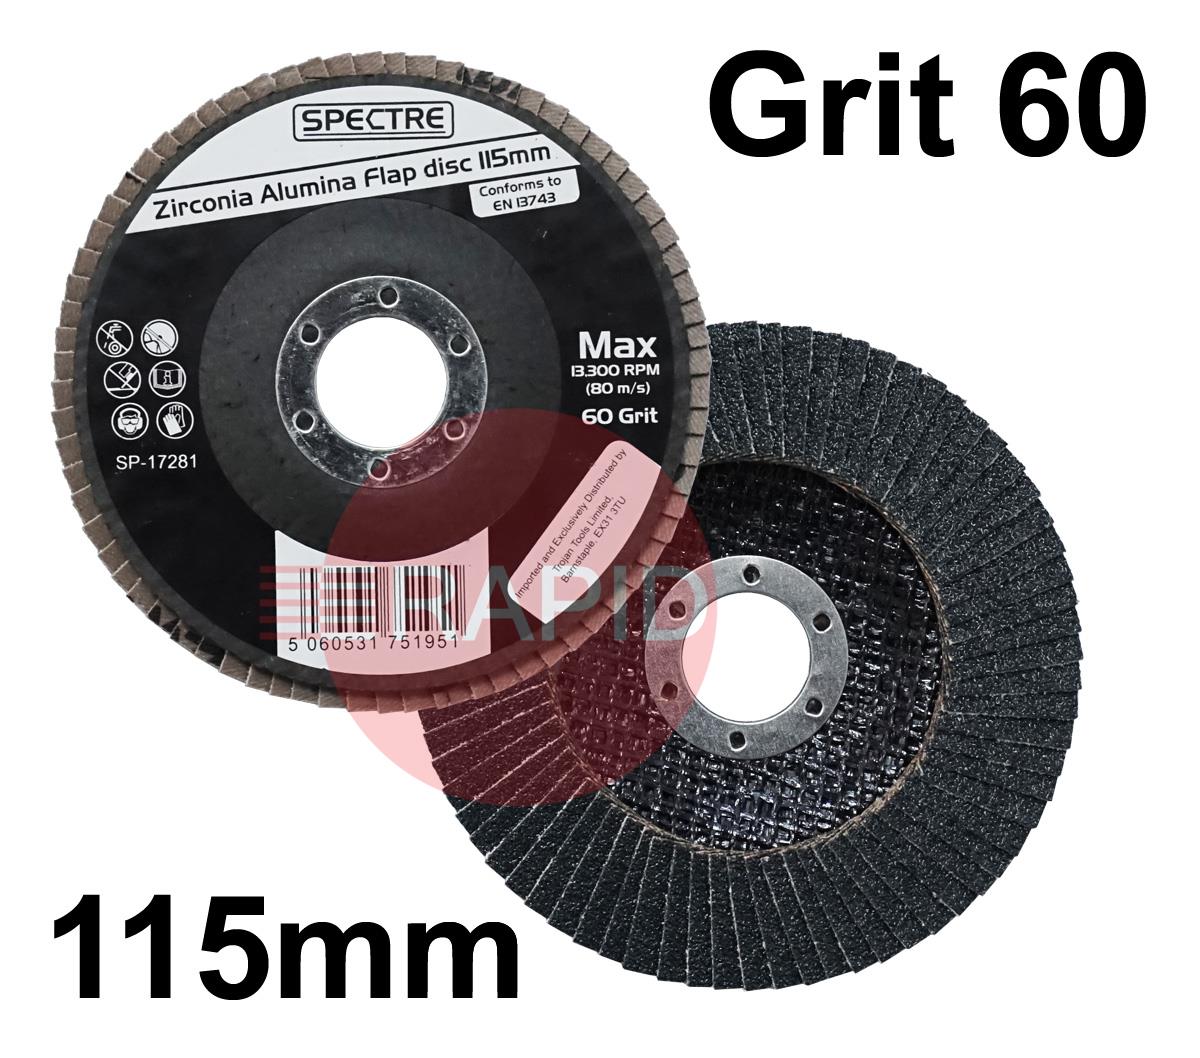 SP-17281  Spectre 115mm (4.5) Zirconium Flap Disc - Grit 60